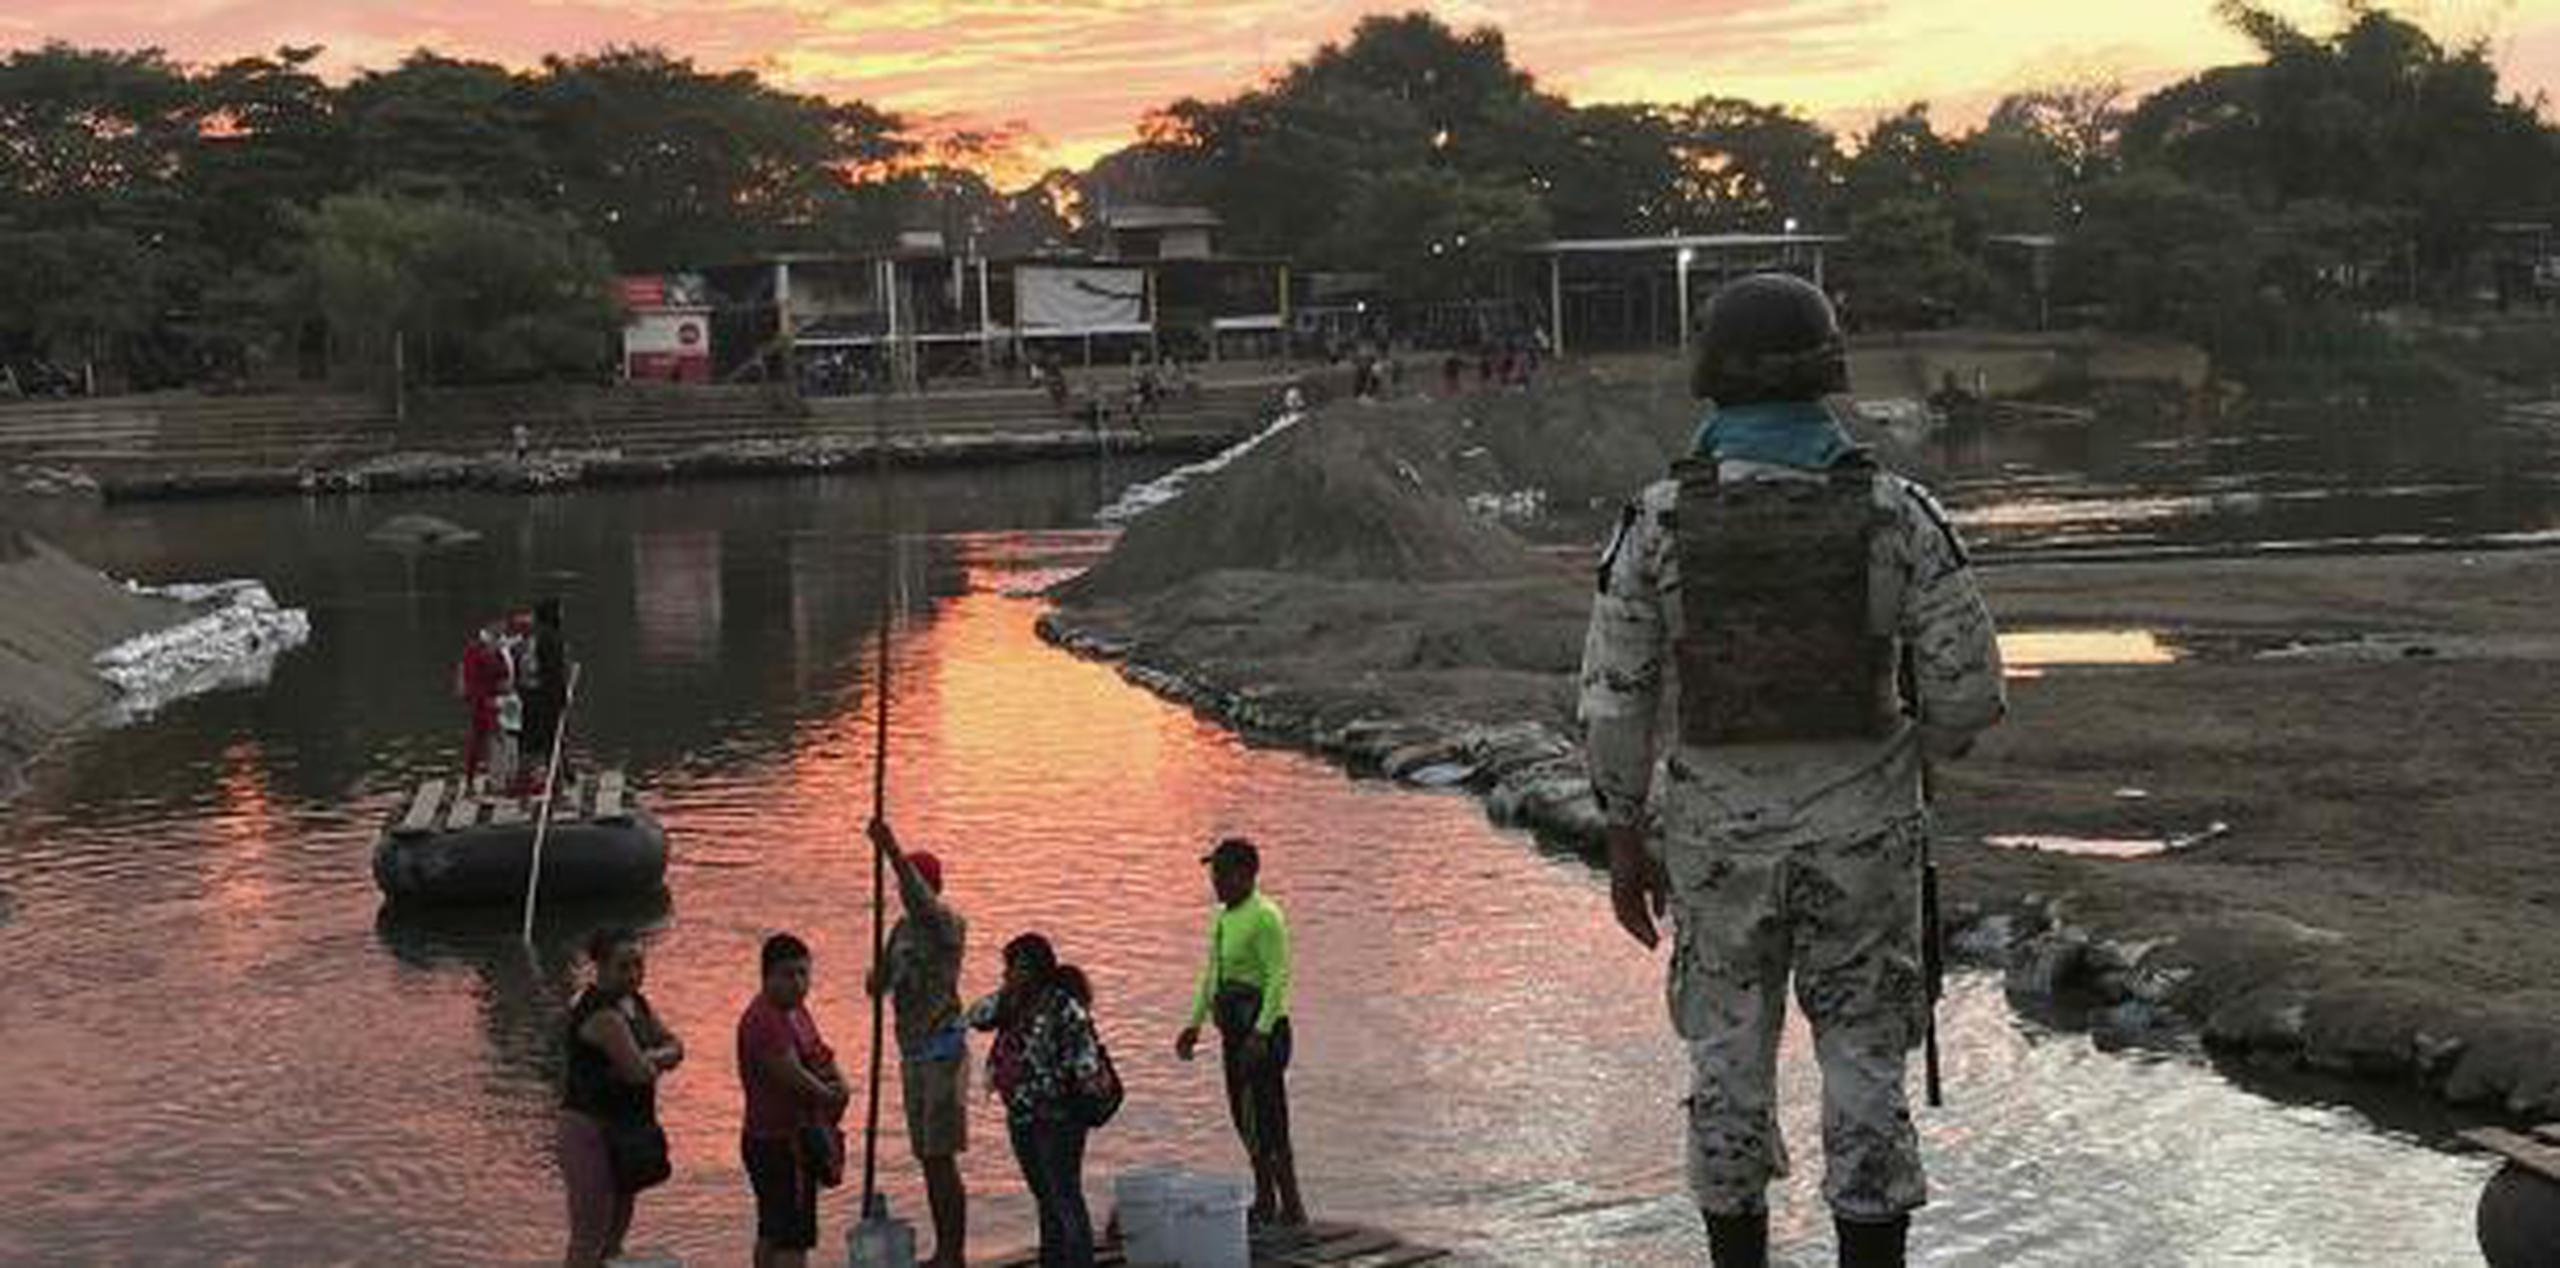 El Instituto Nacional de Migración (INM) de México indicó vía Twitter que había reforzado la vigilancia en varios puntos a lo largo de la frontera sur para garantizar “una migración segura, ordenada y regular”. (AP)